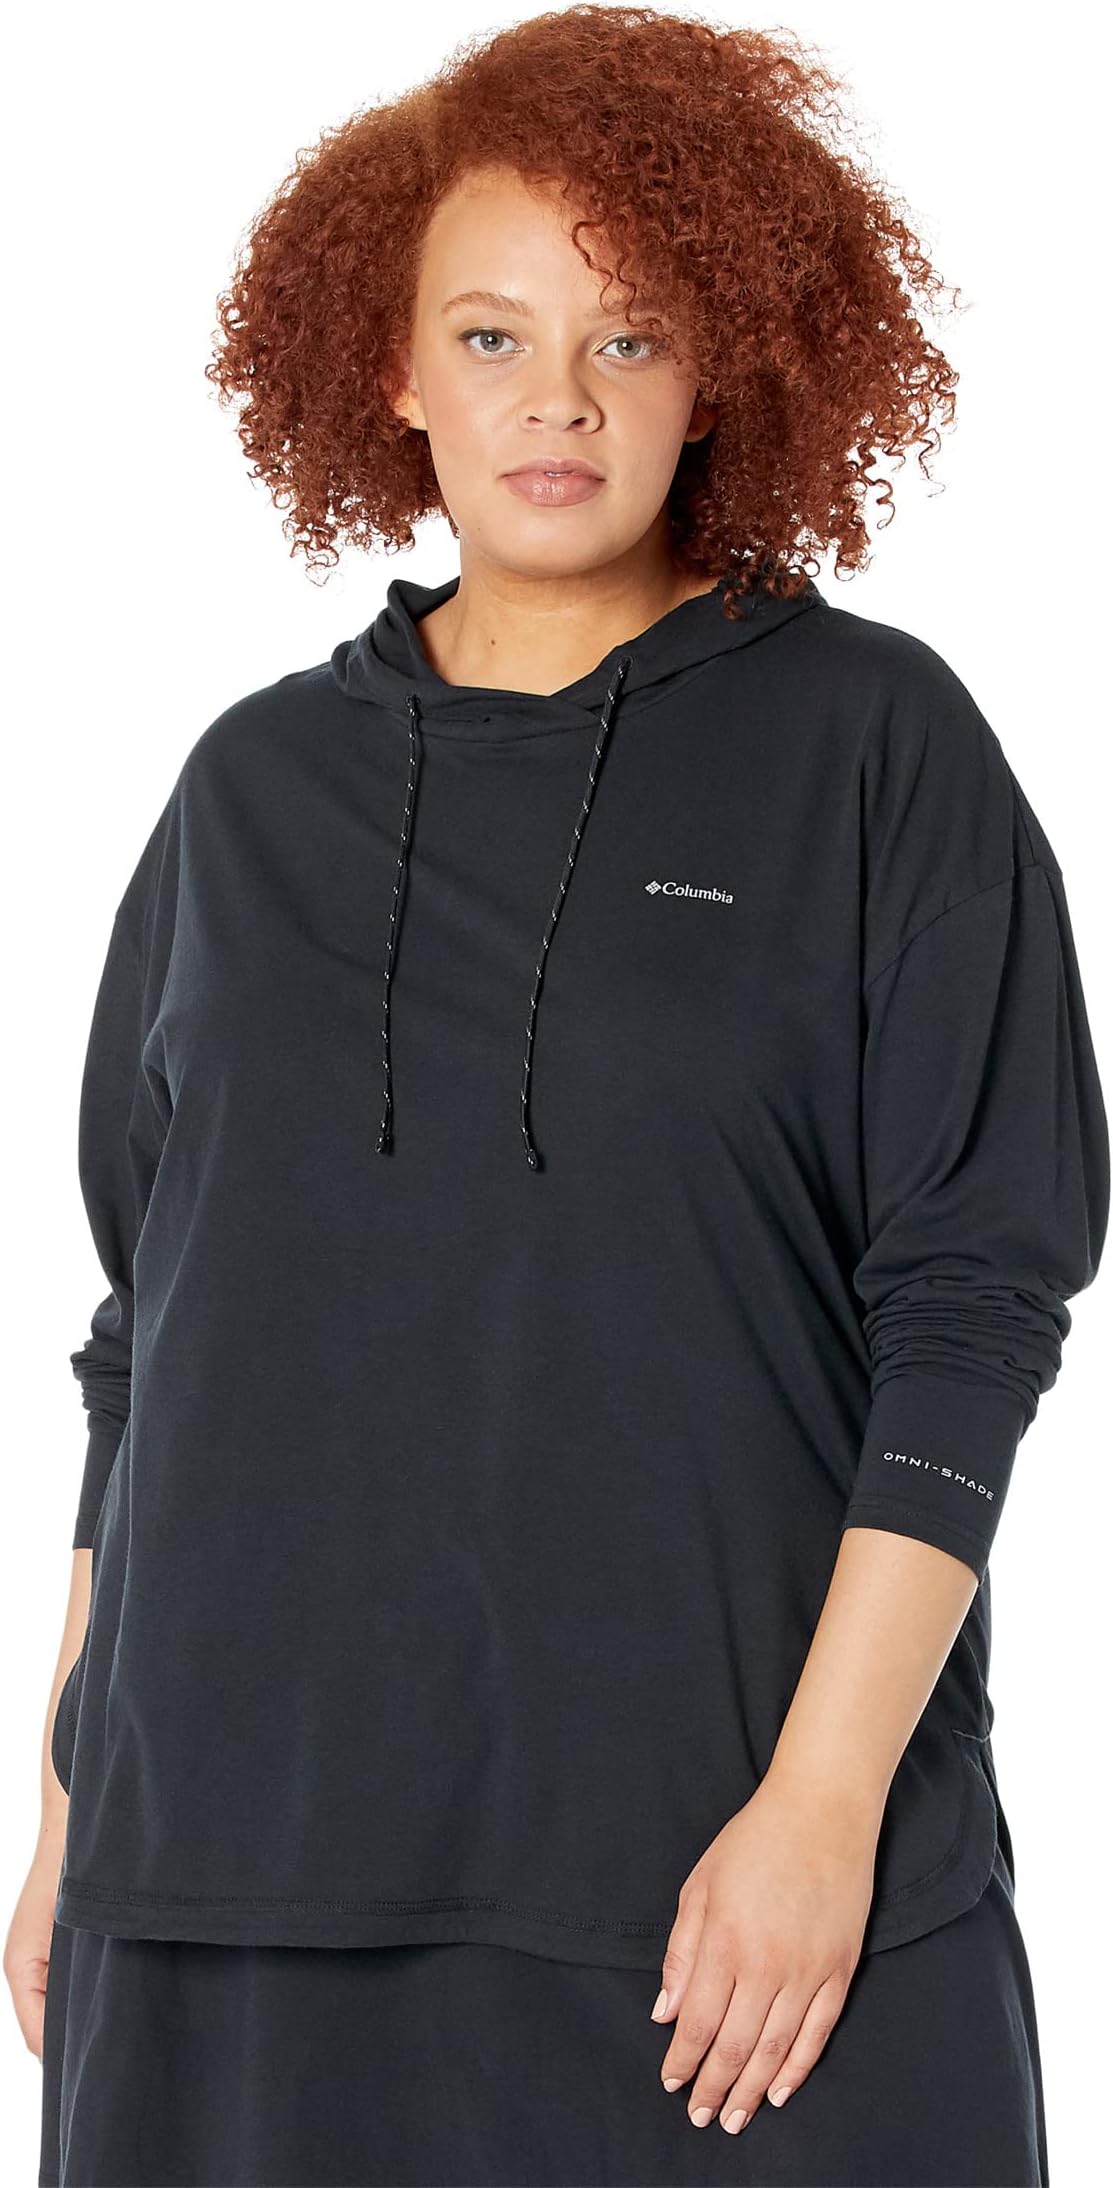 Пуловер с капюшоном Sun Trek больших размеров Columbia, черный